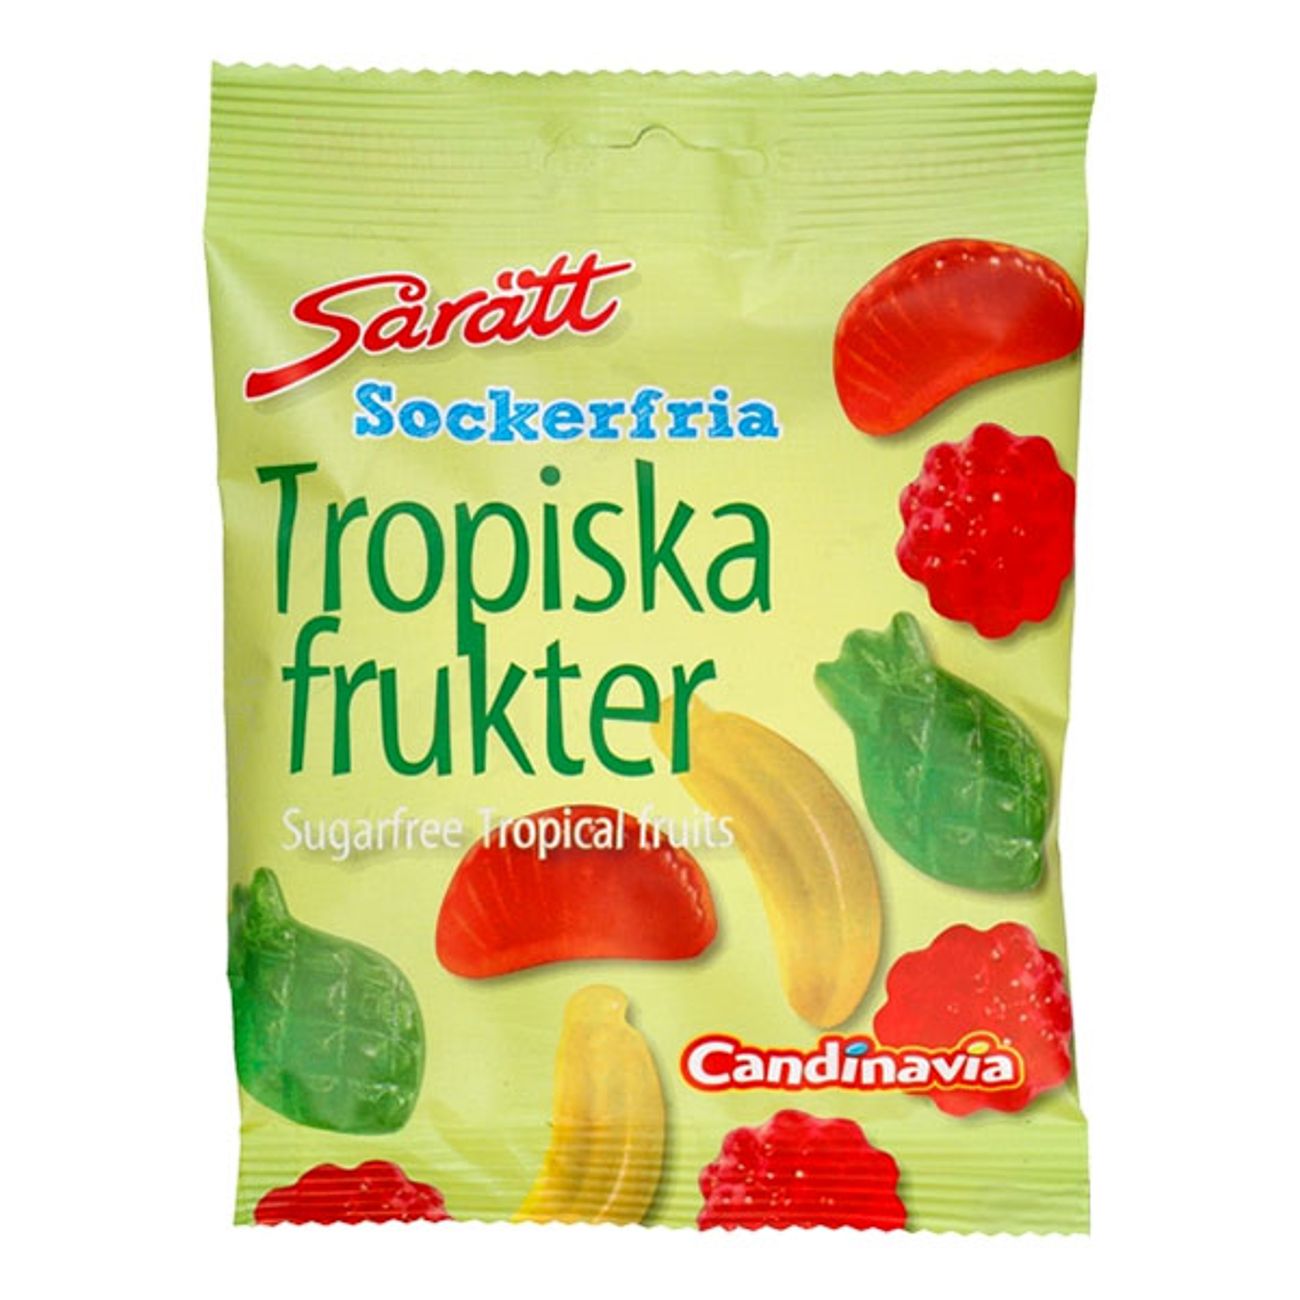 saratt-sockerfria-tropiska-frukter-1